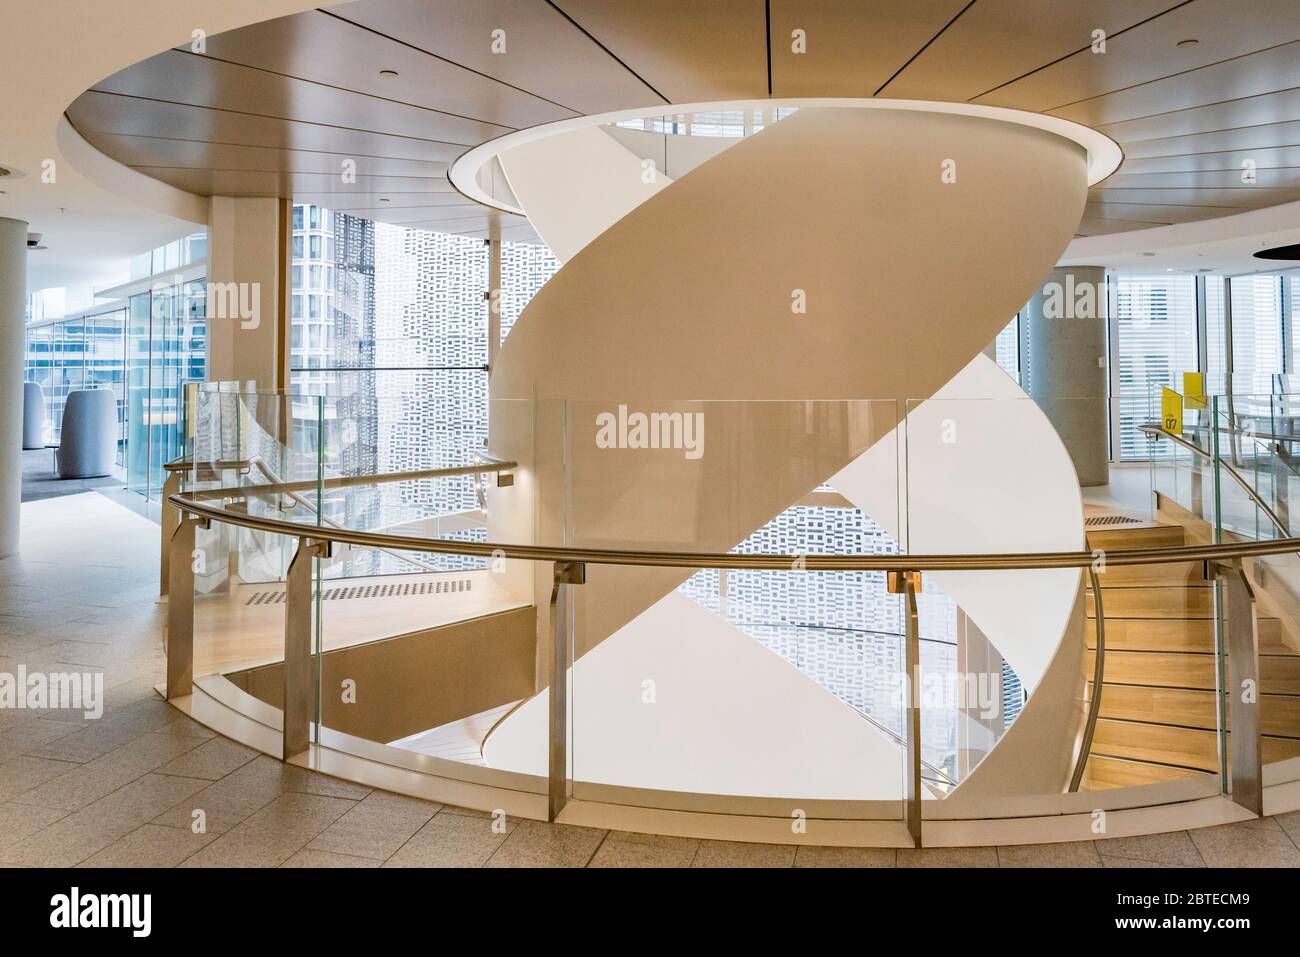 La doppia scalinata ad elica intrecciata nel nuovo edificio universitario UTS Central di Sydney è realizzata in acciaio australiano e vetro curvo Foto Stock